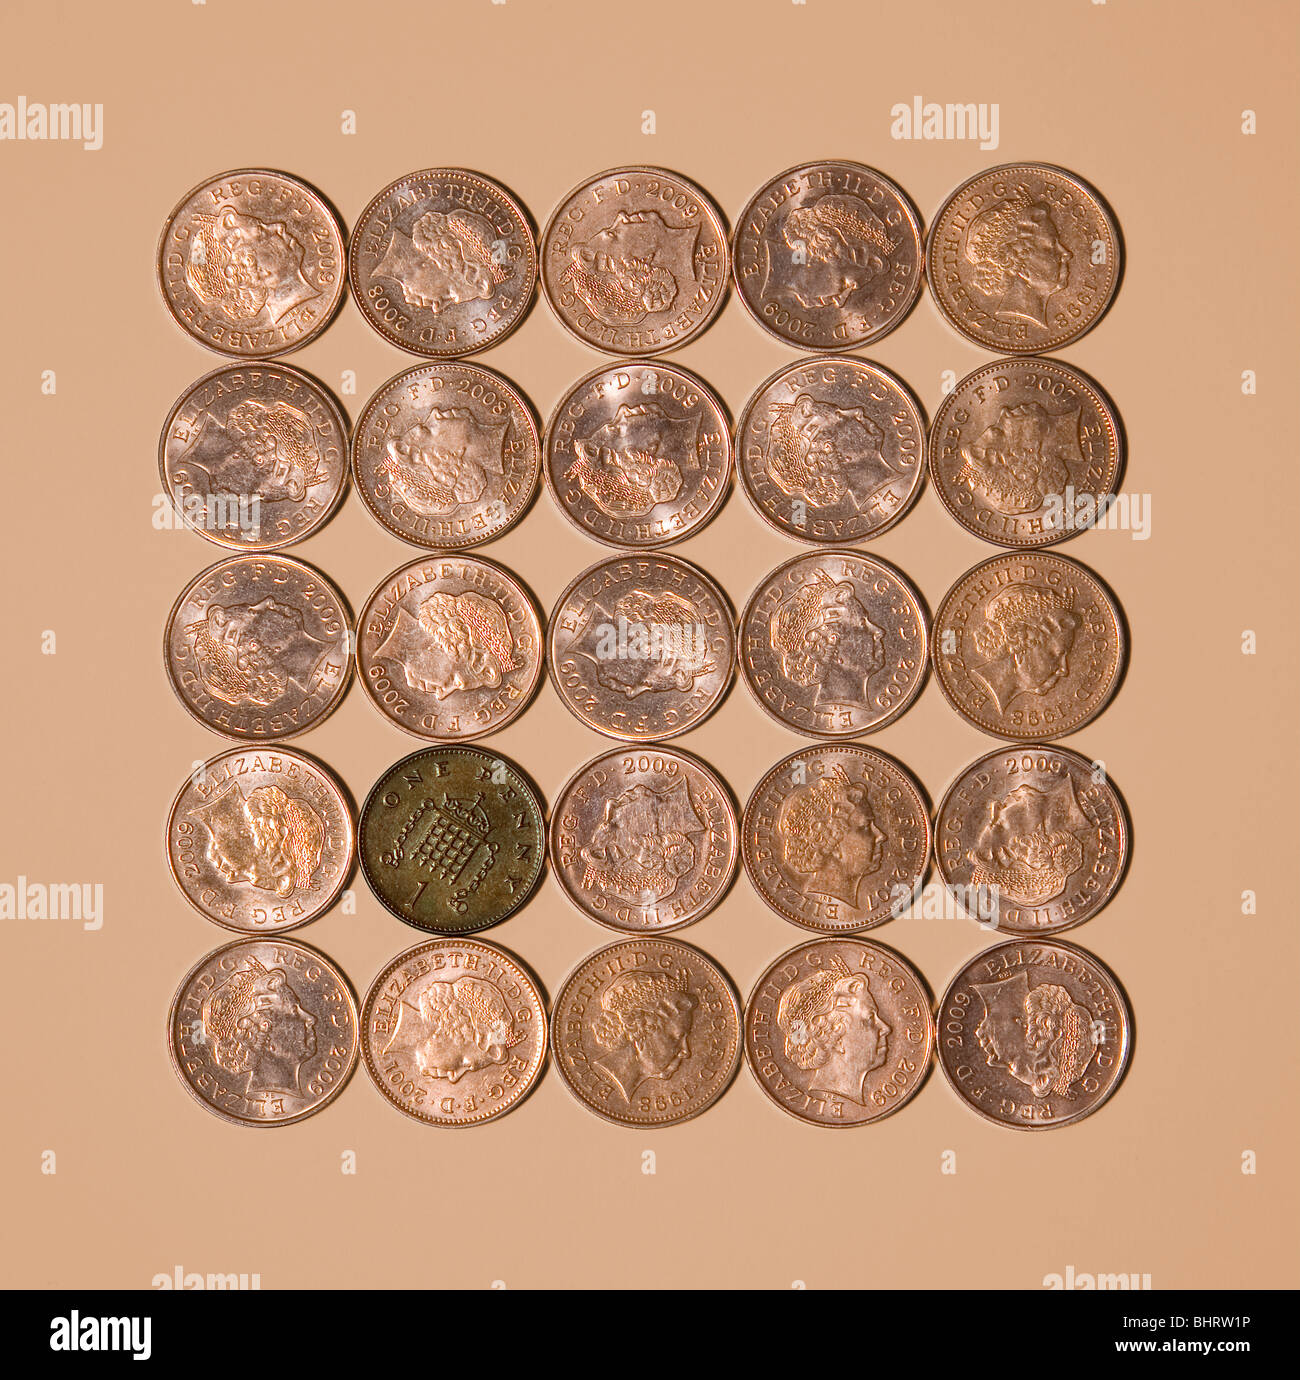 Bad penny sobre fondo marrón claro Foto de stock